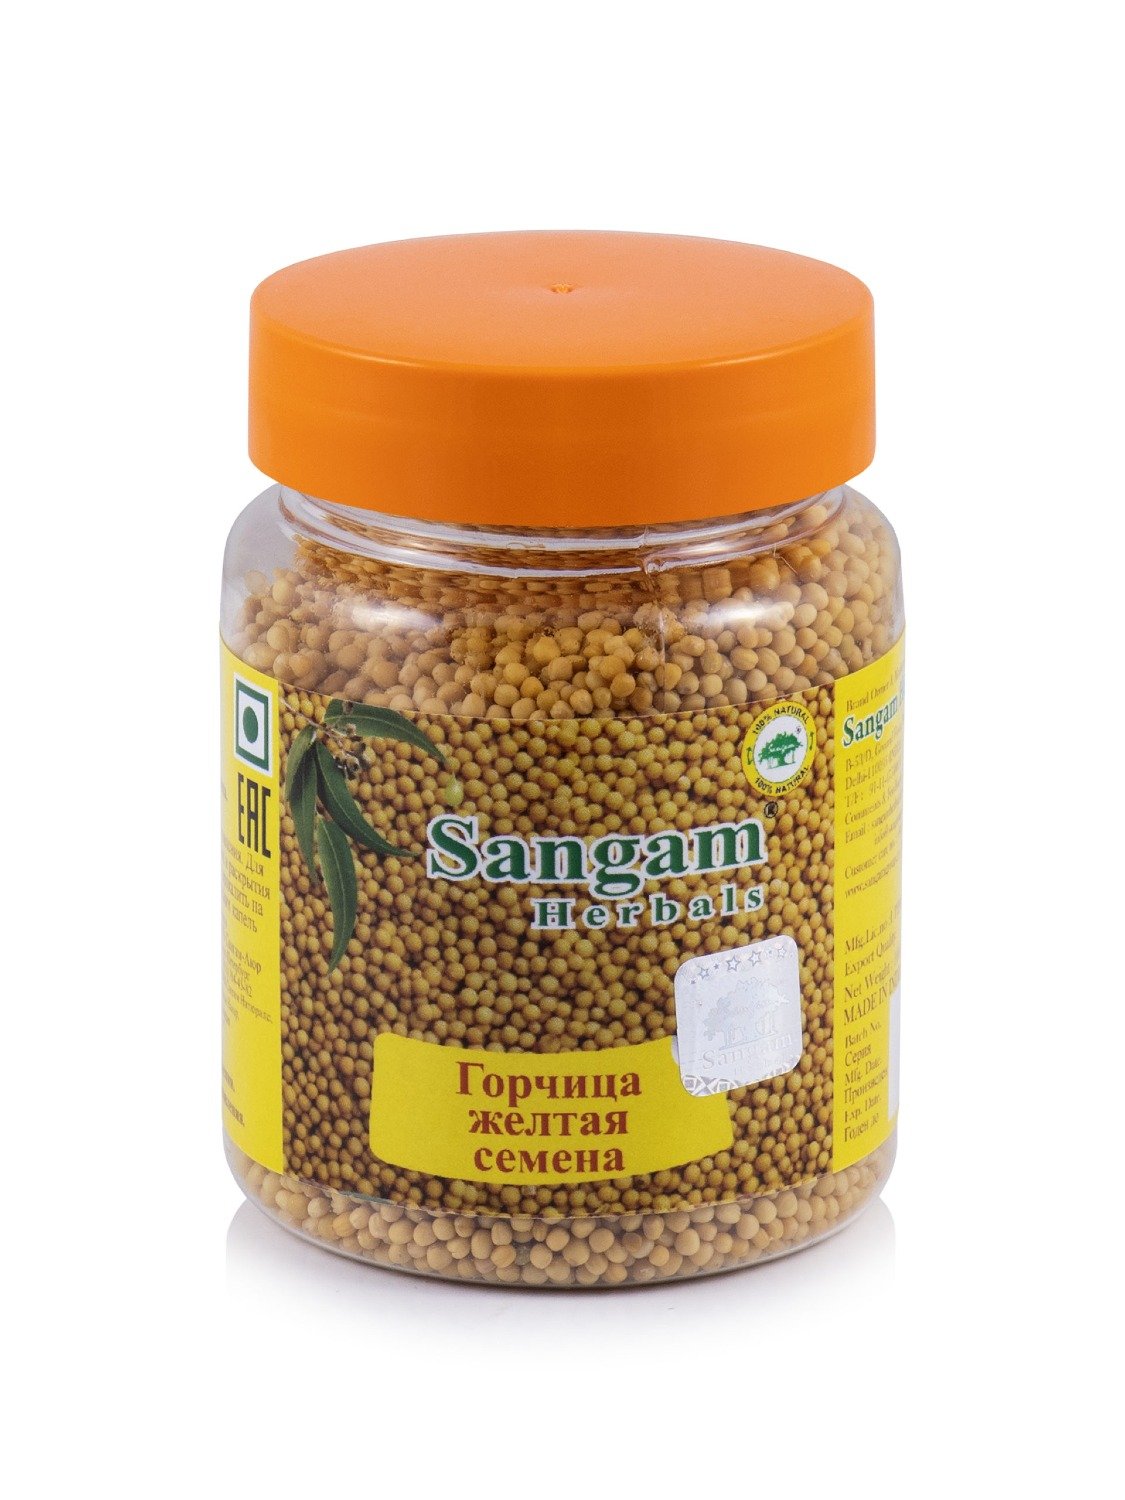 Купить Горчица желтая (семена) Sangam Herbals (100 г) в интернет-магазине #store#